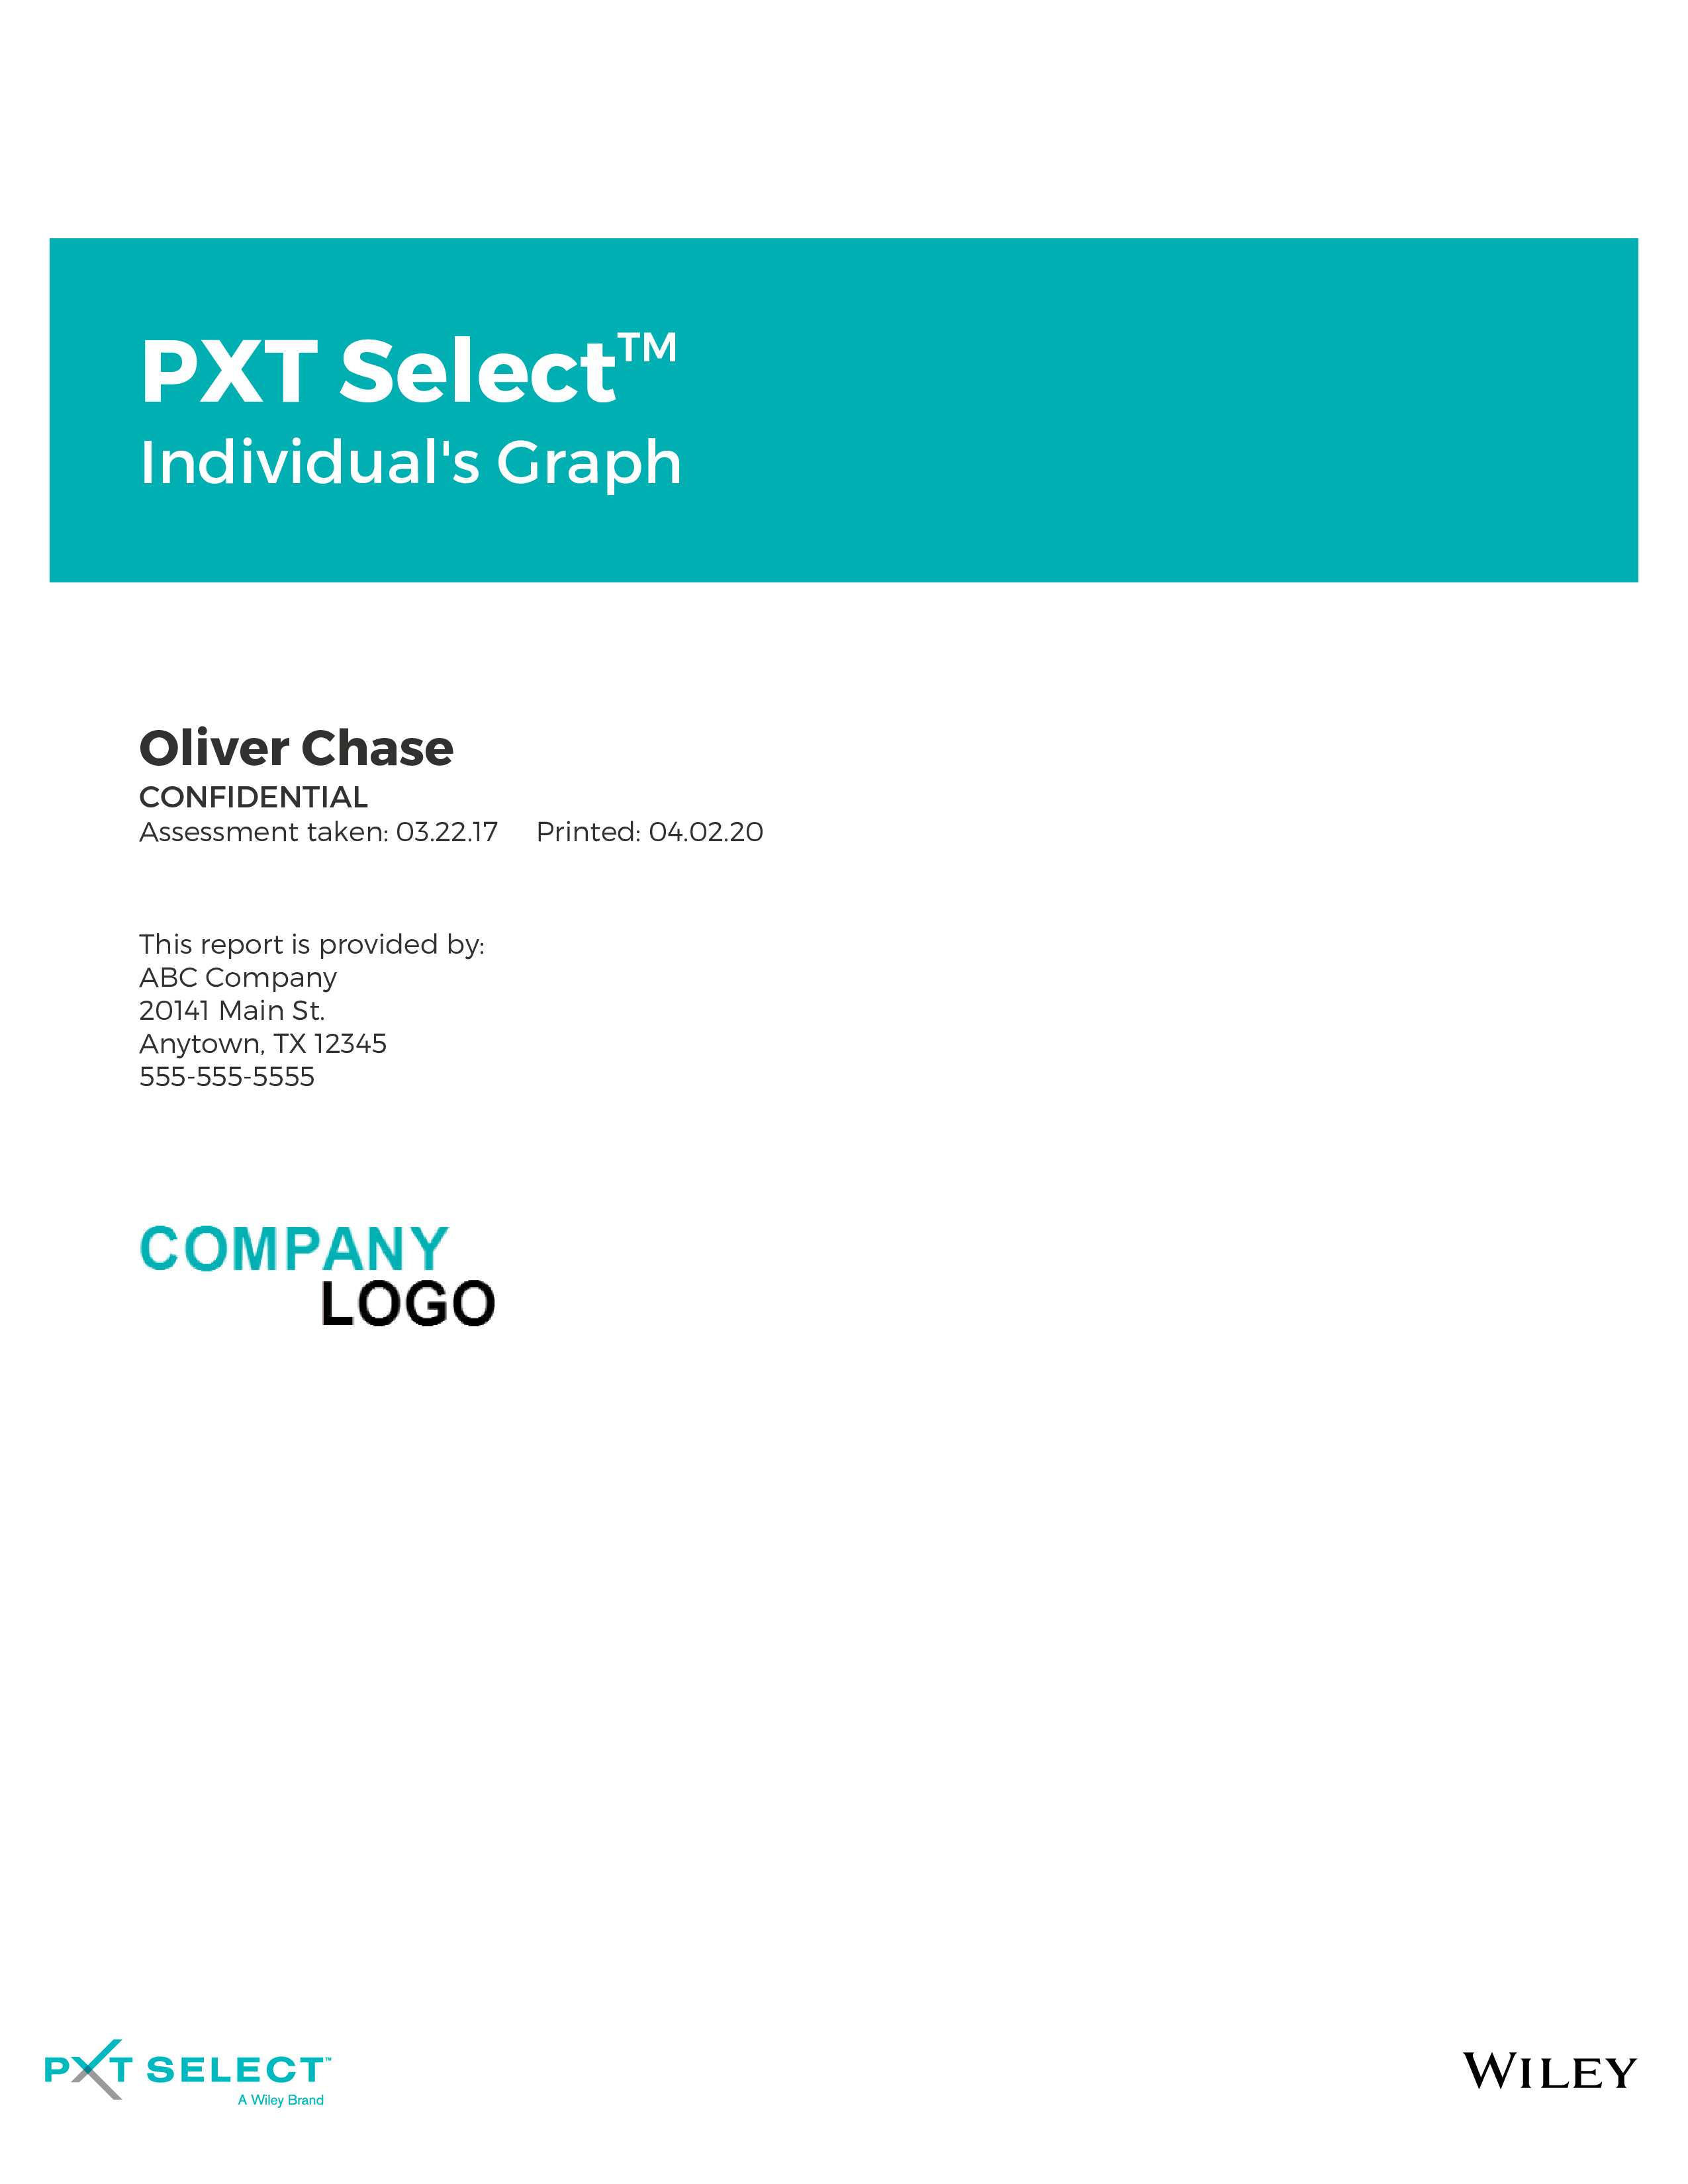 PXT Select Individual's Graph November 2021 Image